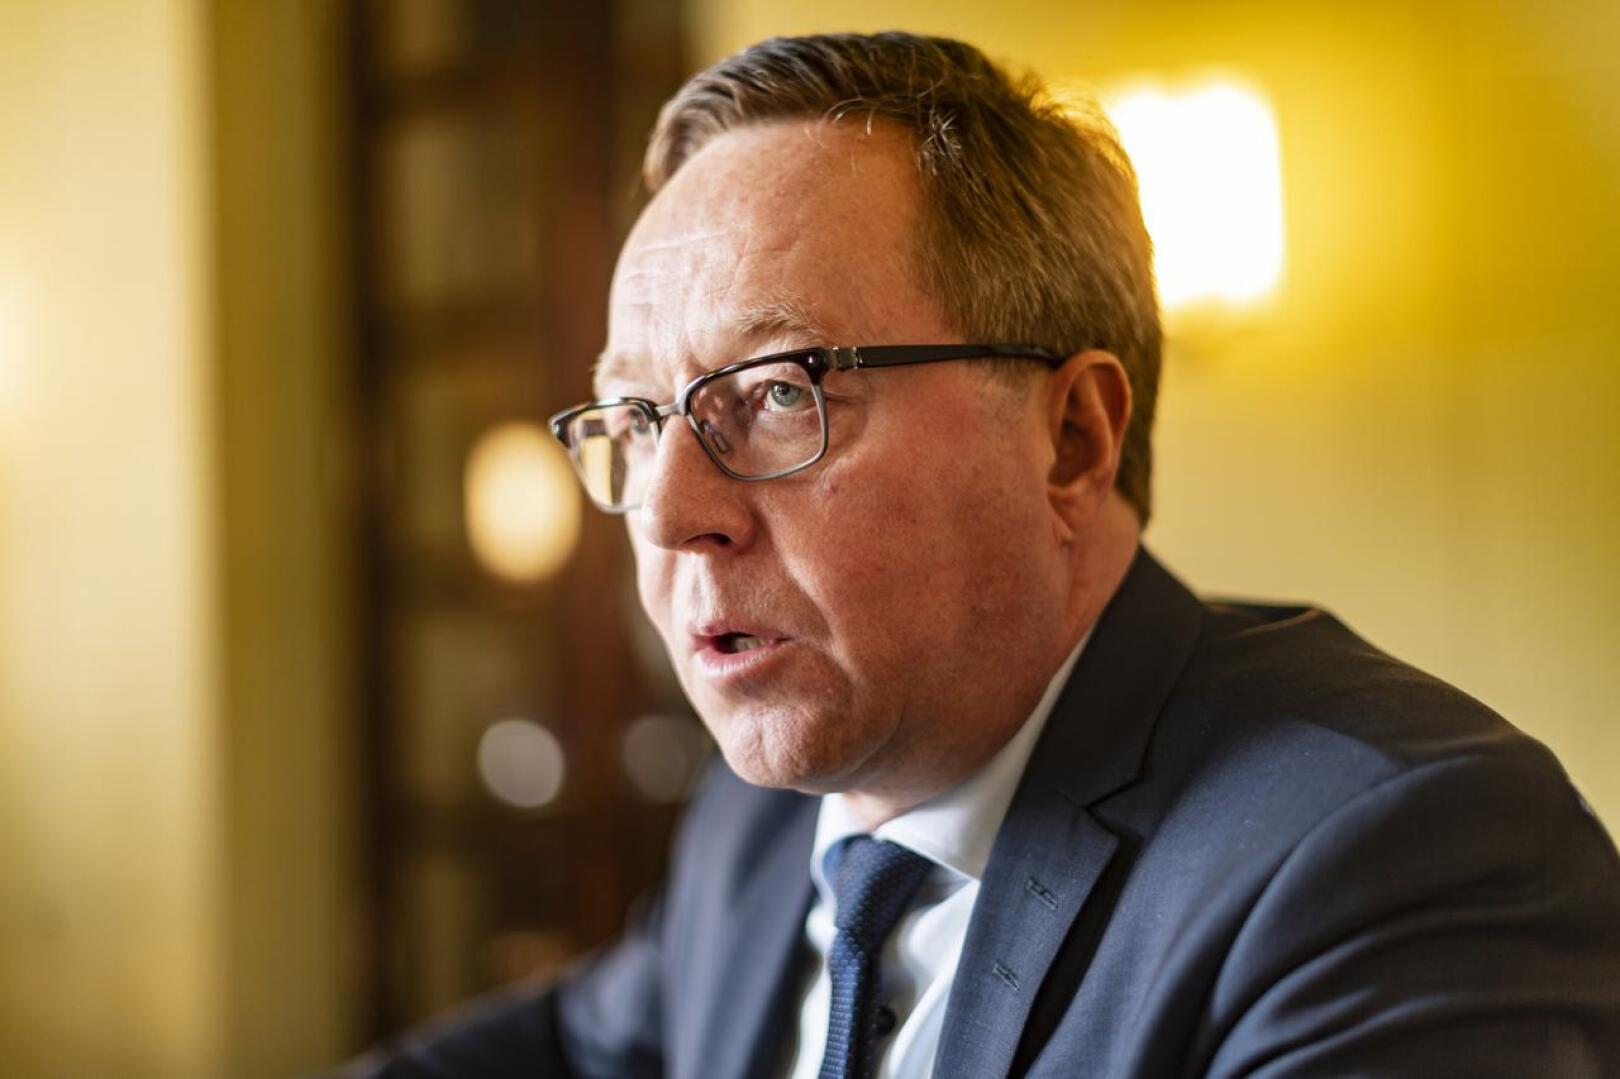 Elinkeinoministeri Mika Lintilän mielestä lentojen jatkuminen ensin Finnairin voimin ja sen jälkeen valtion ostopalveluilla on "erävoitto".